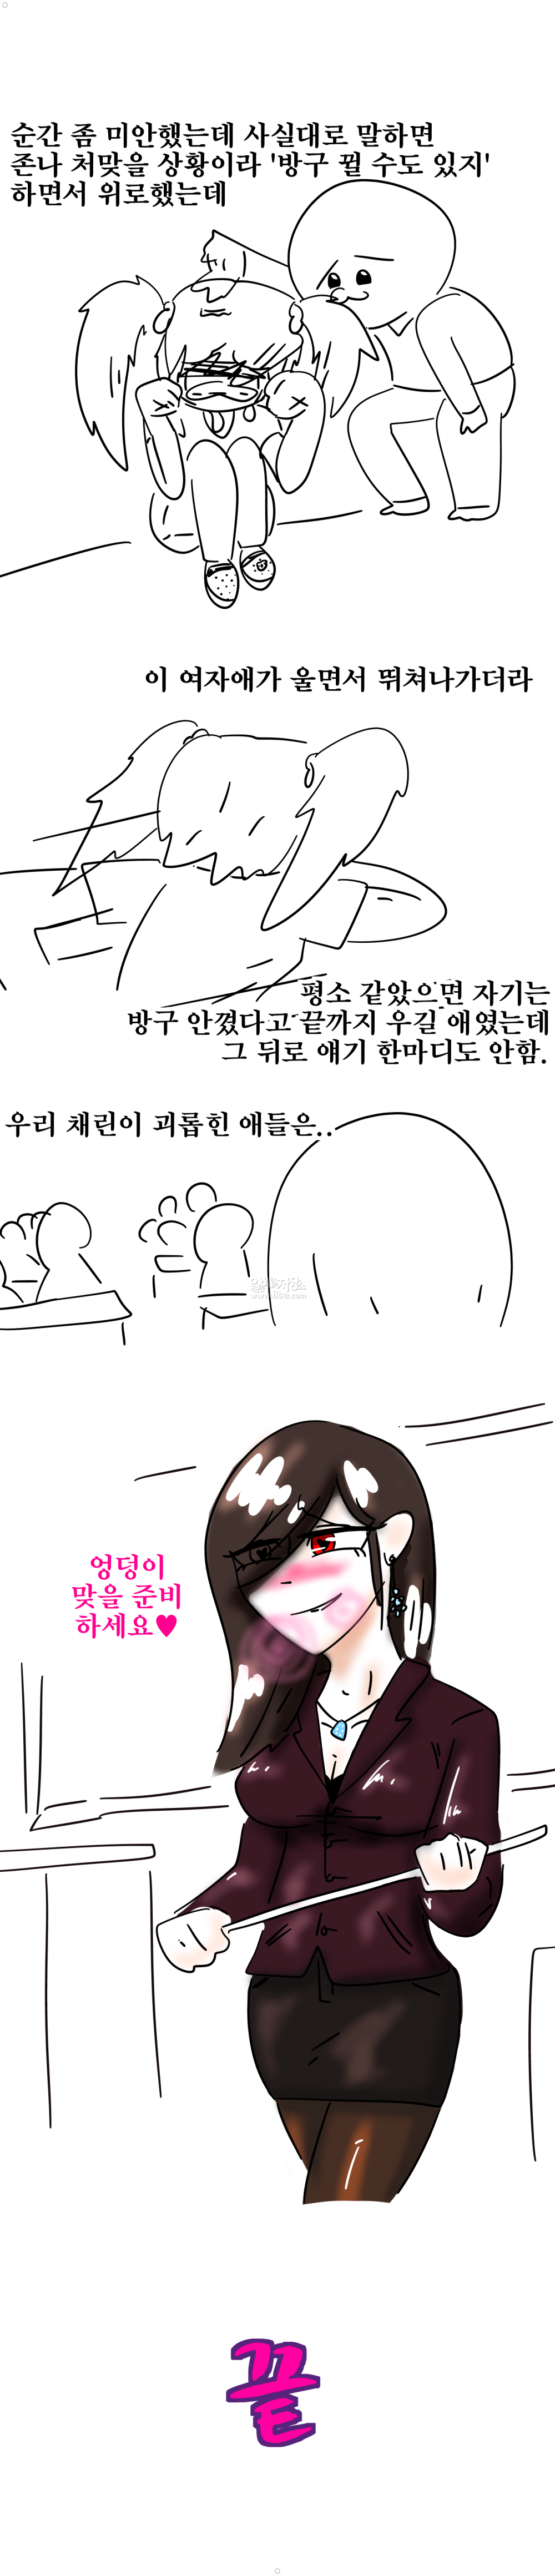 흔한 방구탄으로 처자애 울린 썰만화 ㅎㅎ 이미지 #3